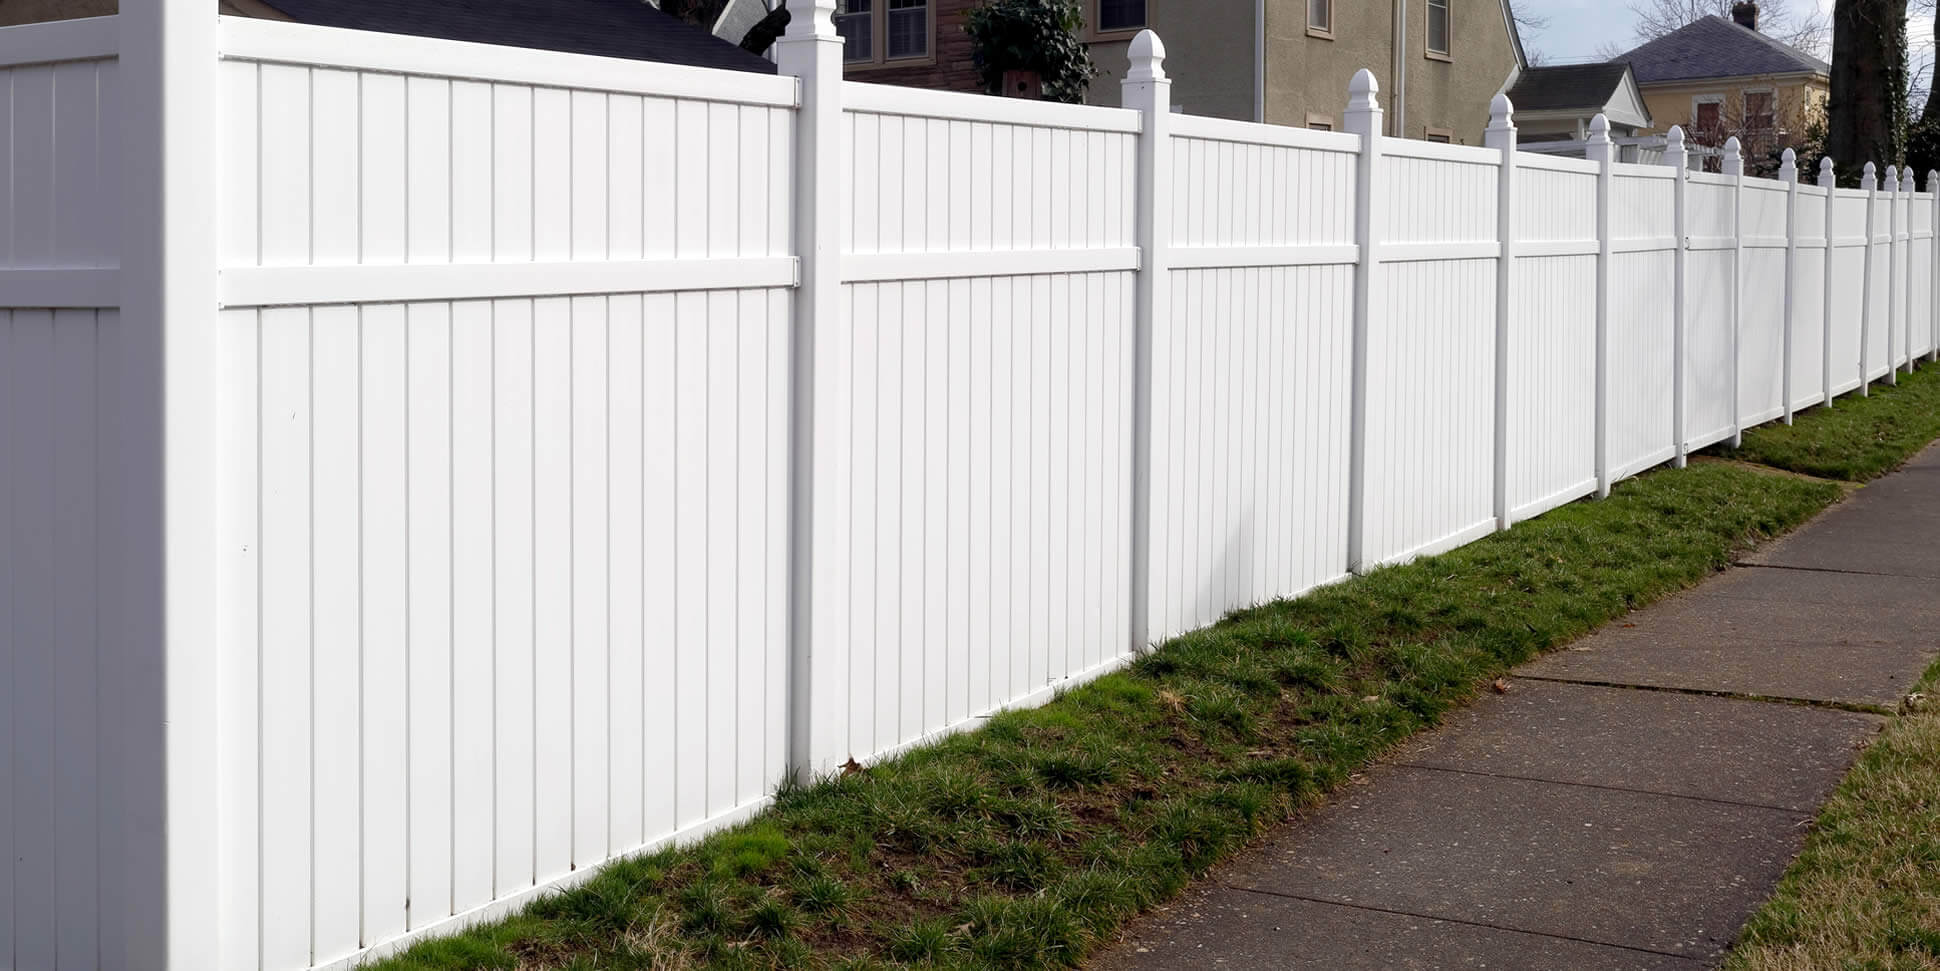 vinyl resin fence panels installed